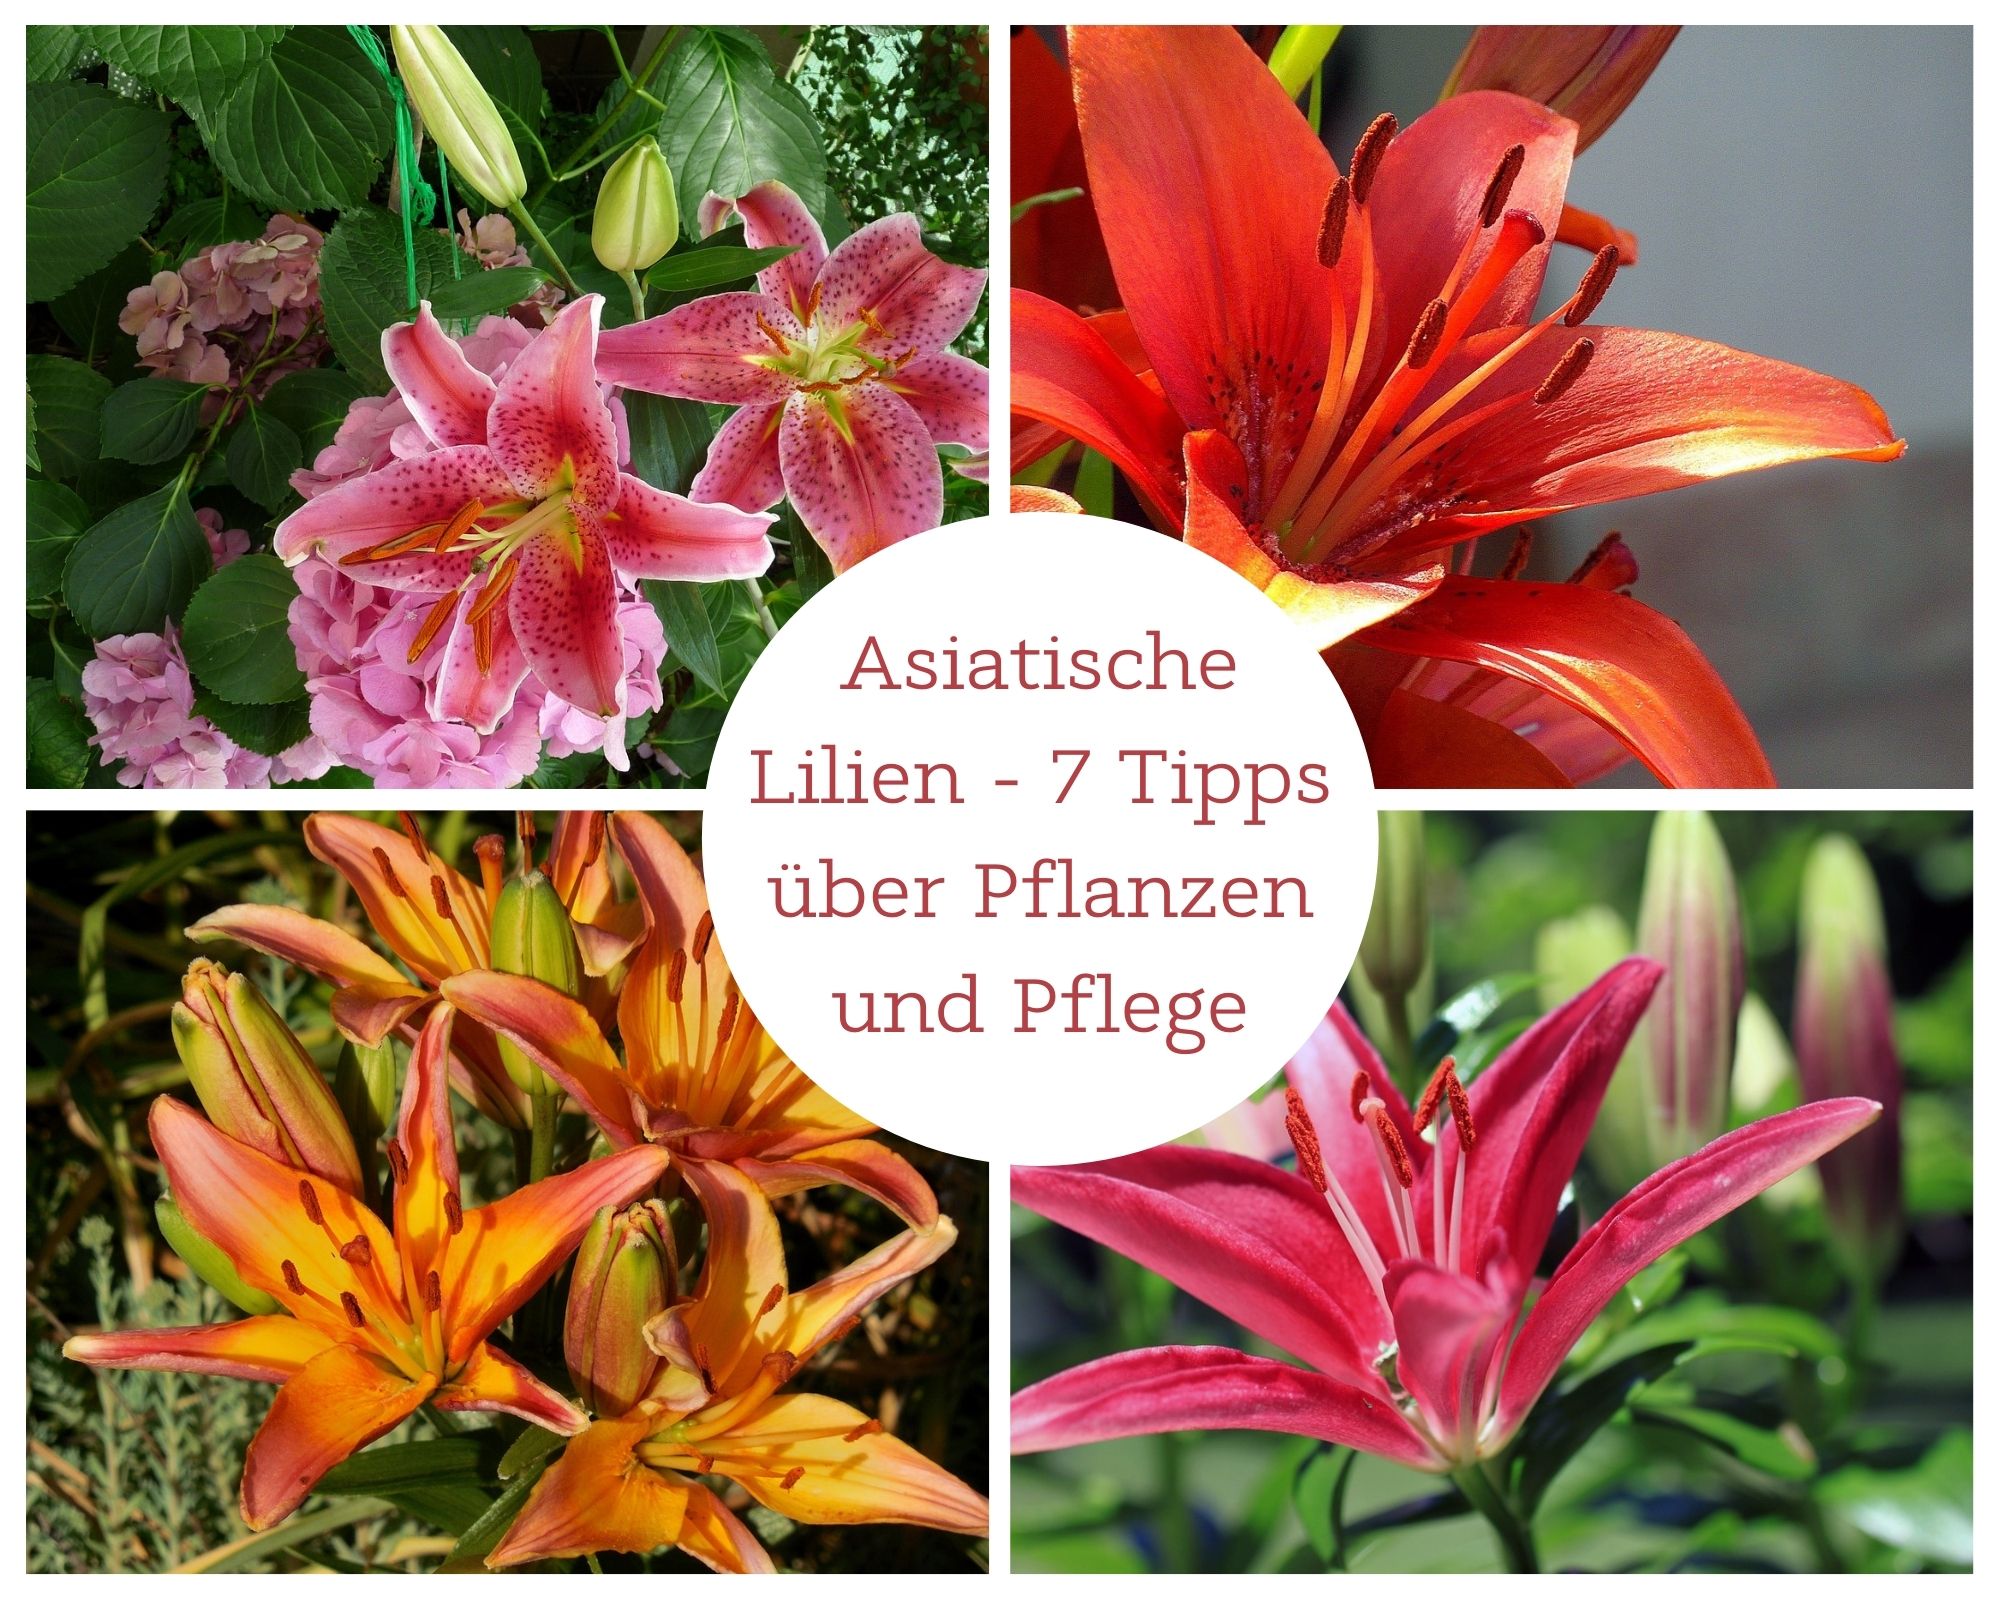 Asiatische Lilien - 7 Tipps über Pflanzen und Pflege